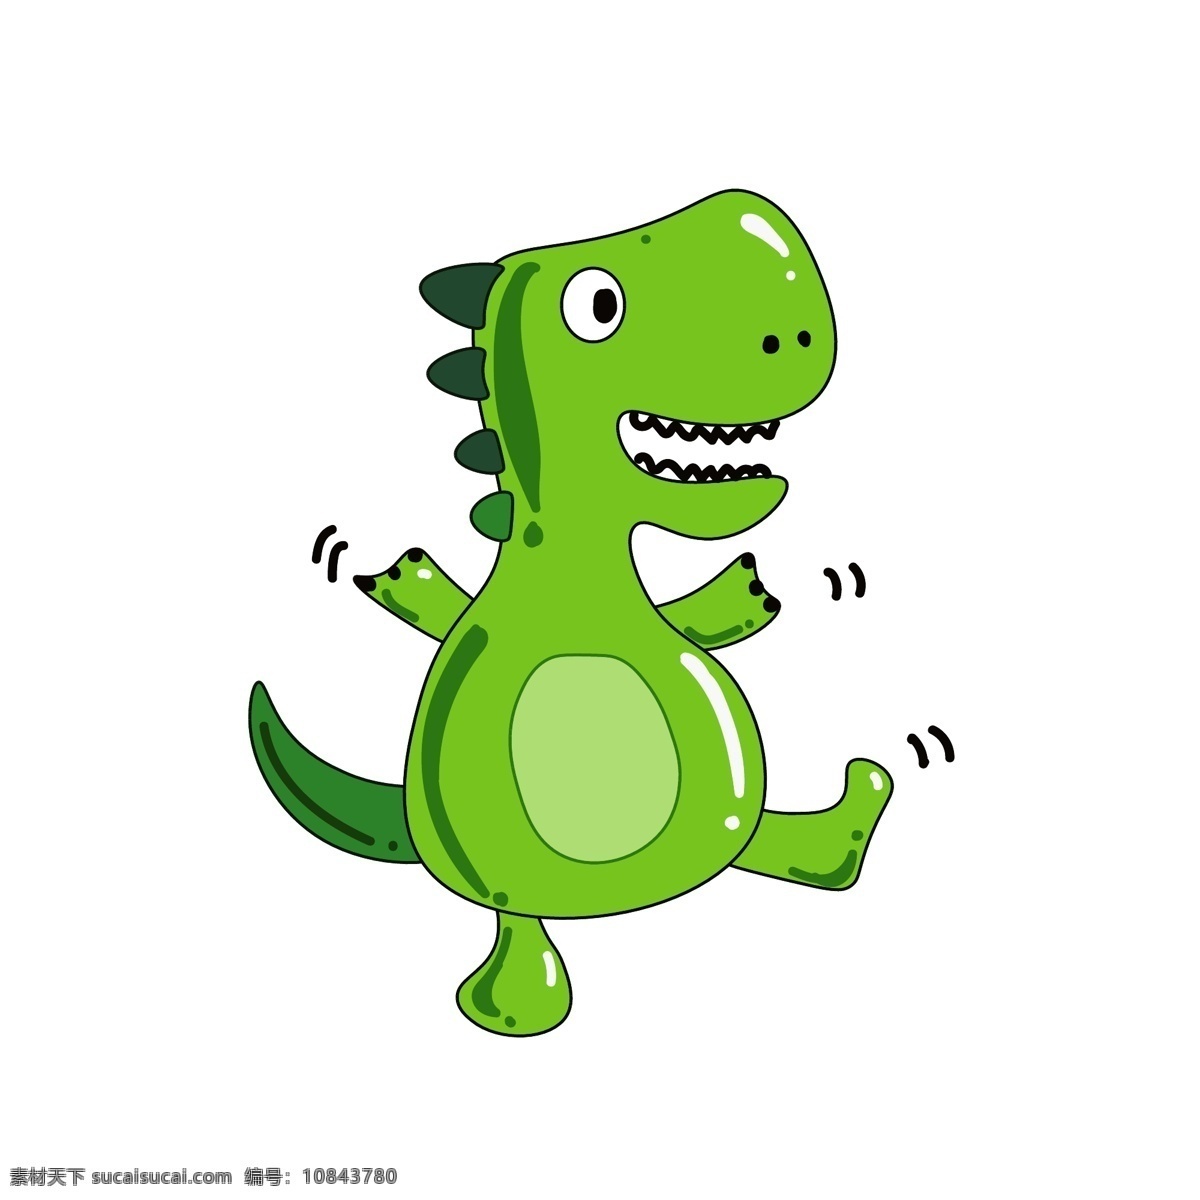 跳舞 恐龙 装饰 插画 跳舞的恐龙 绿色的恐龙 可爱的恐龙 玩耍的恐龙 创意恐龙 立体恐龙 卡通恐龙